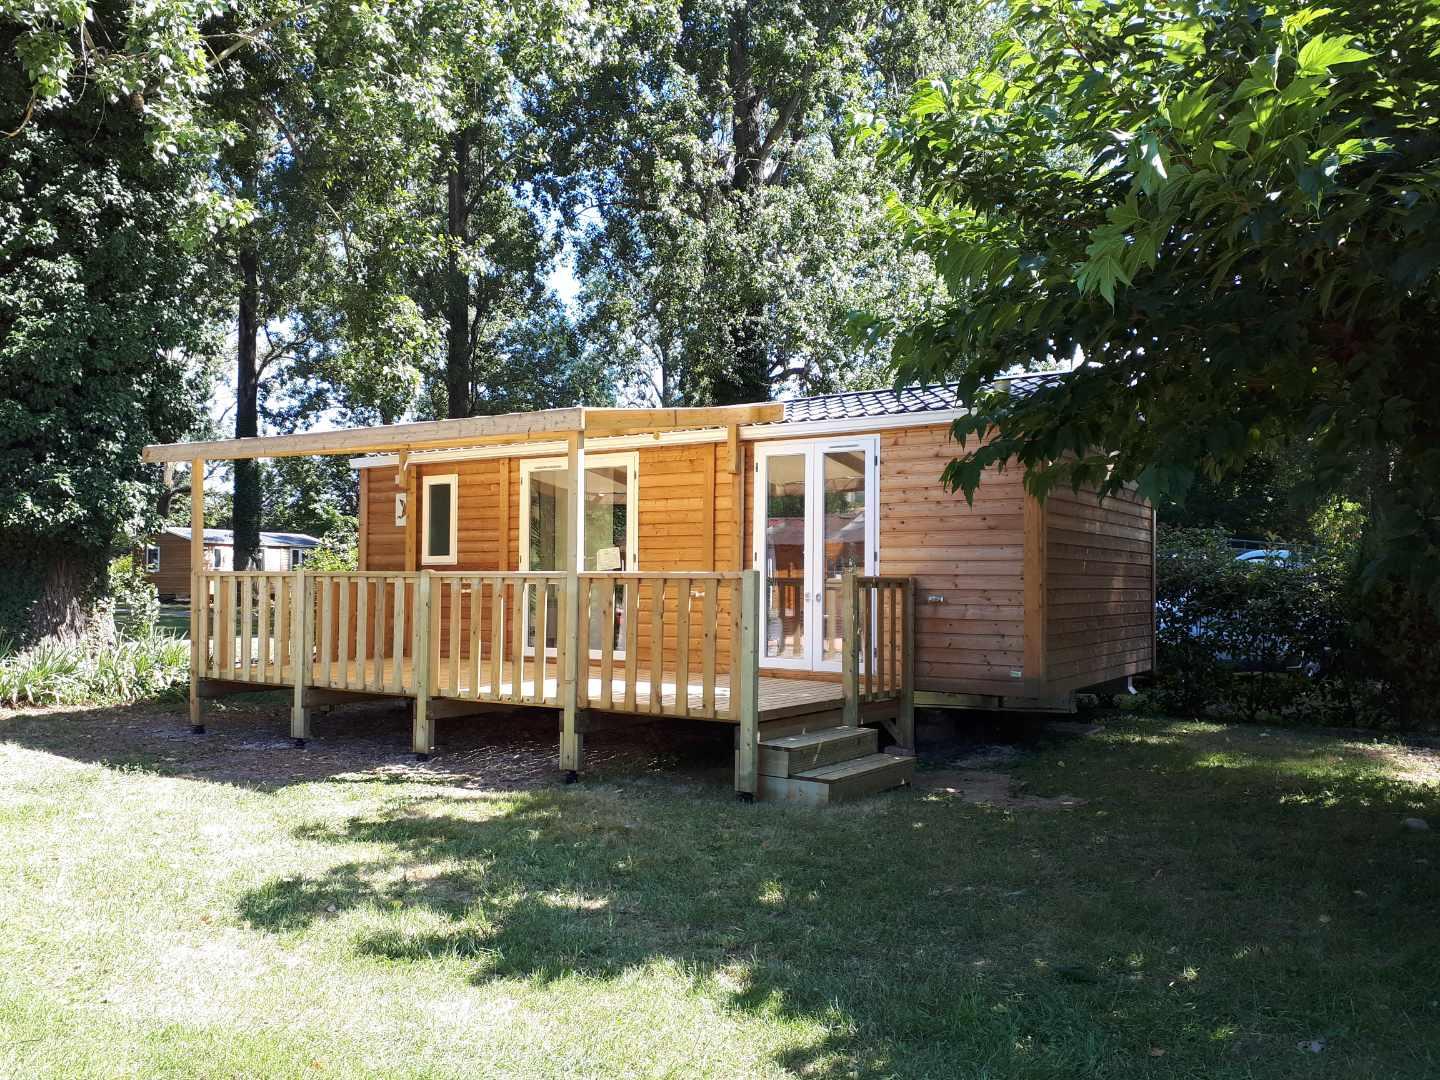 Location - Mobil Home 2 Chambres + Climatisation. Arrivée 16H Départ 10H. Max - Camping Bois & Toilés